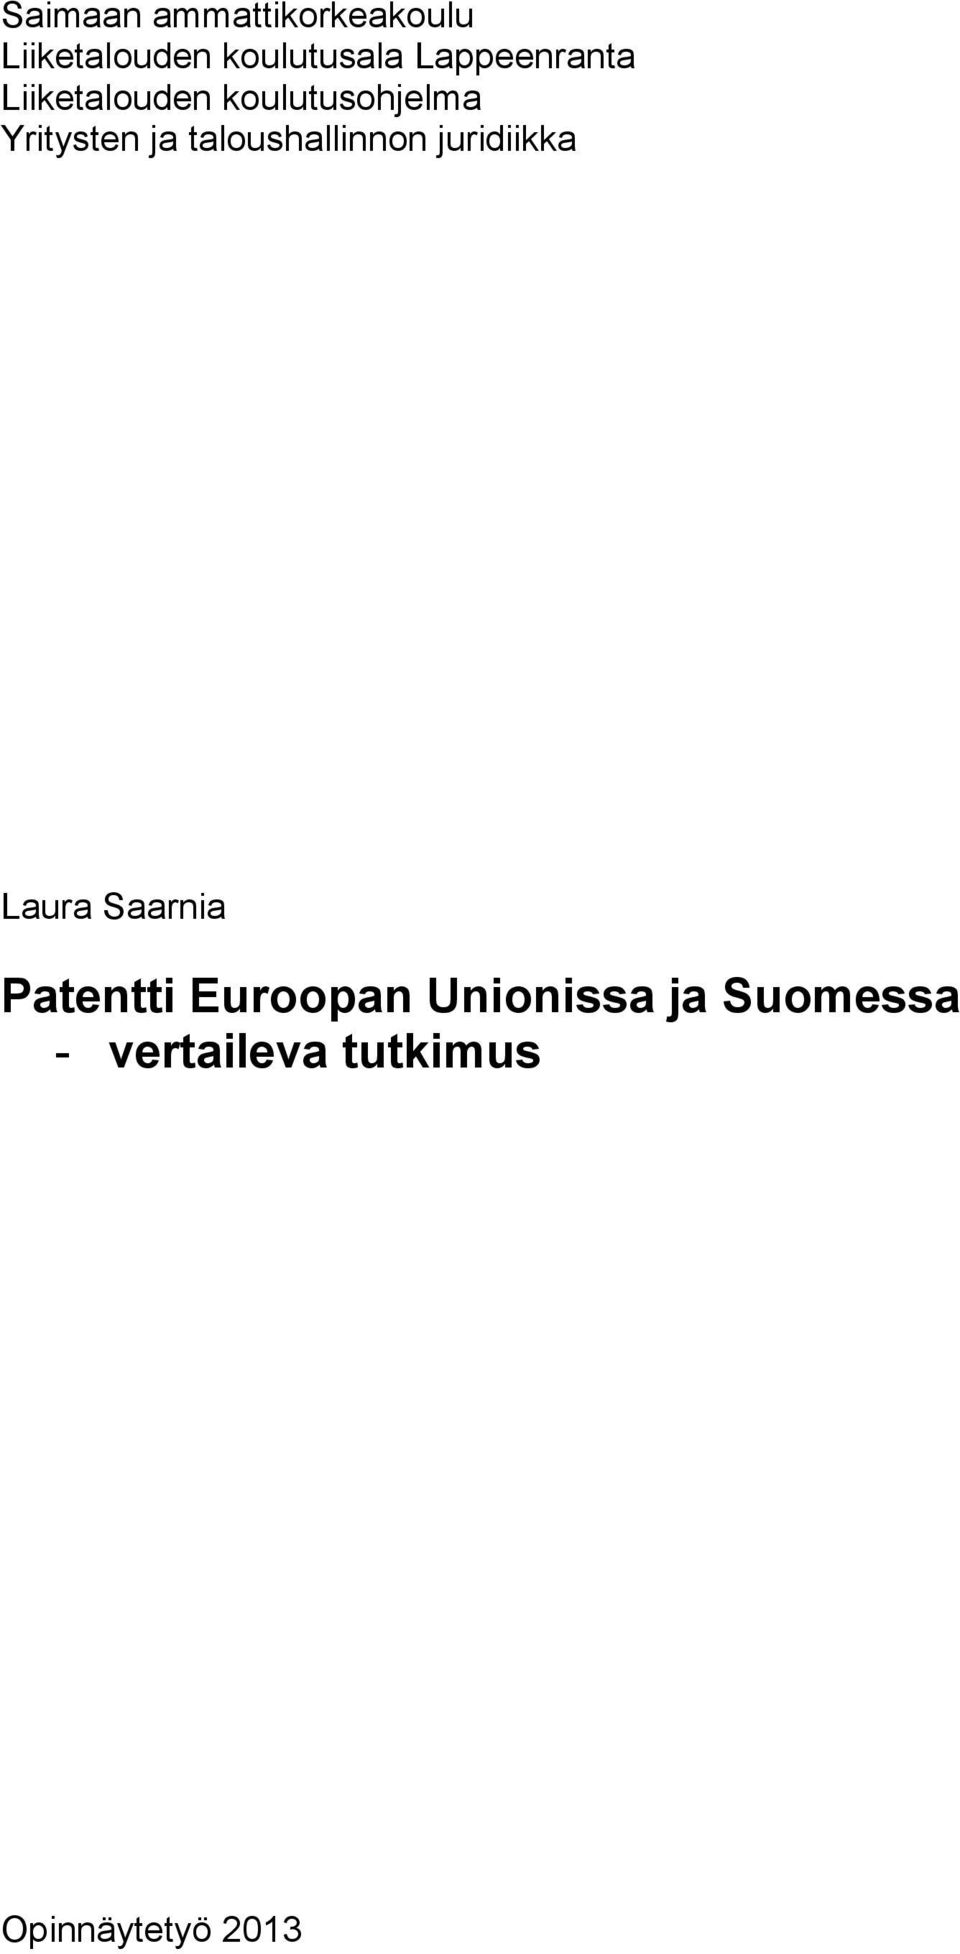 taloushallinnon juridiikka Laura Saarnia Patentti